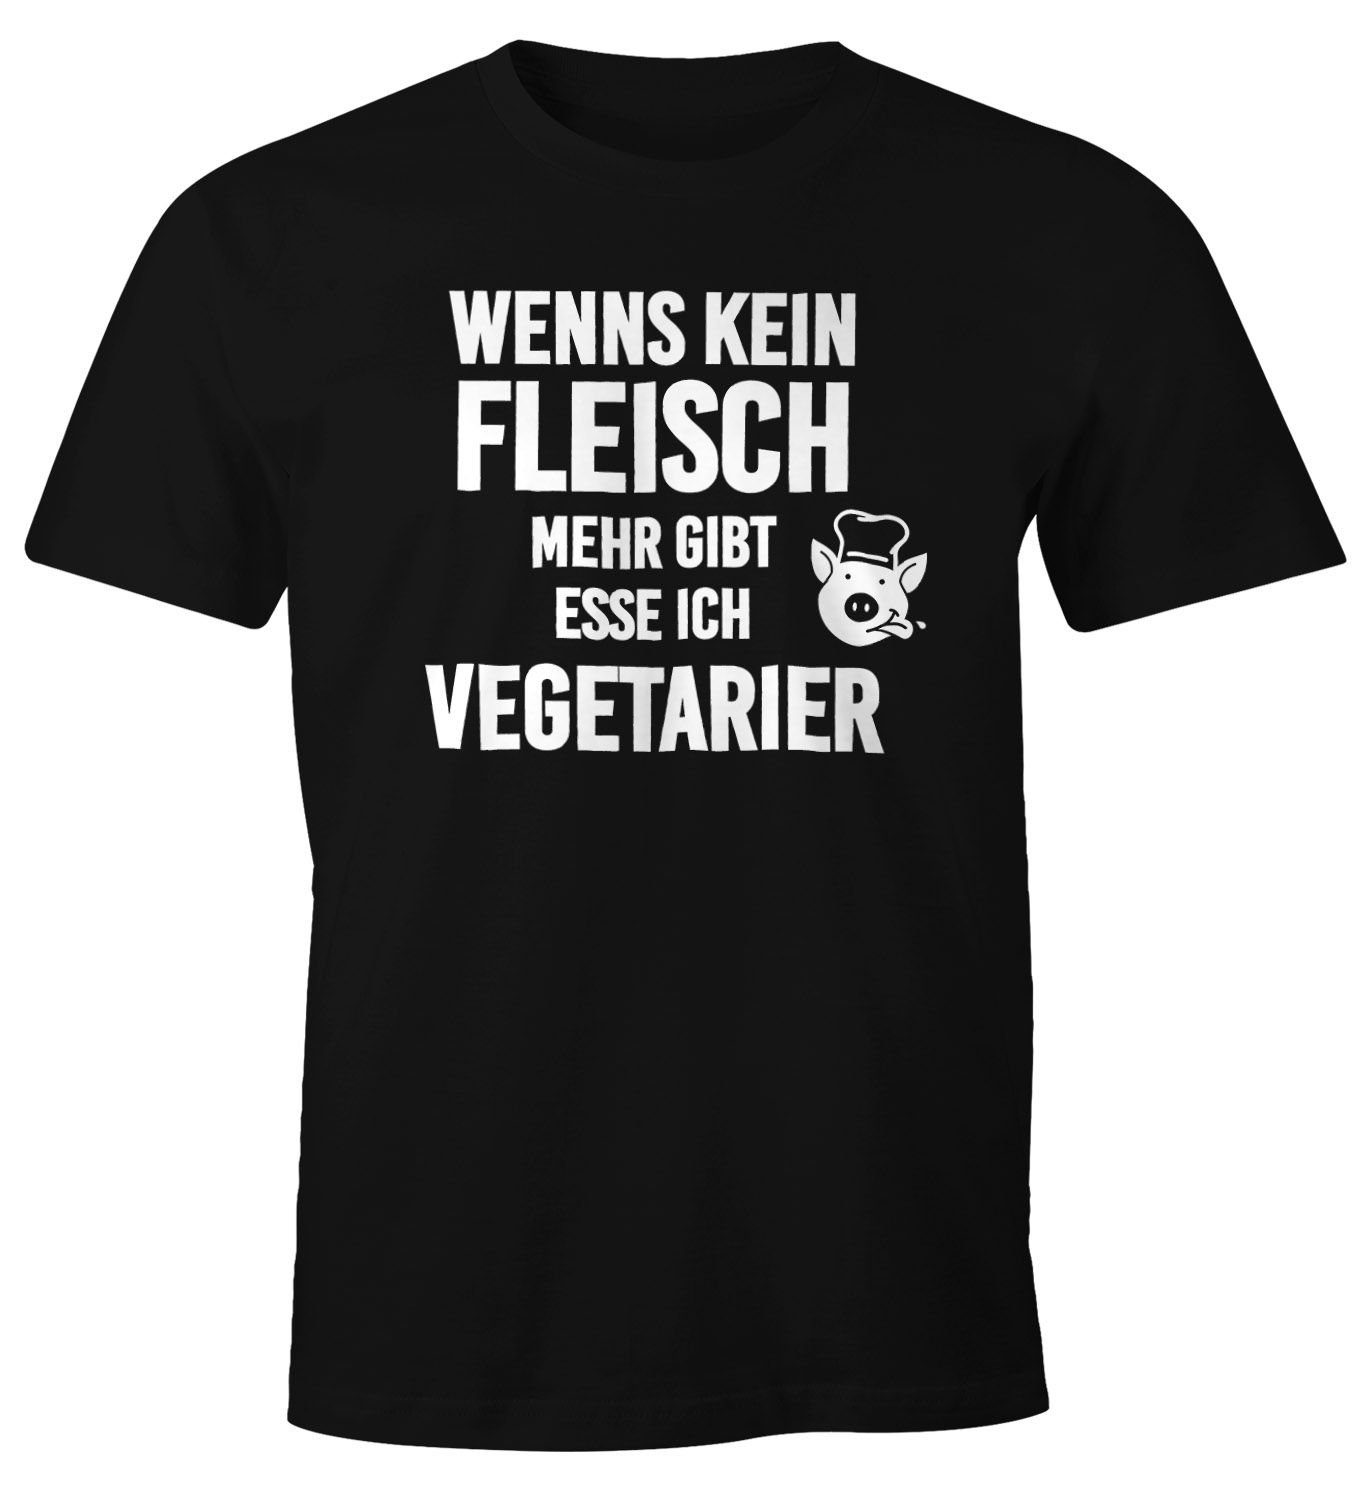 Fun-Shirt gibt mit Print-Shirt mehr Print ich Moonworks® es Herren MoonWorks kein T-Shirt esse Vegetarier Wenn Fleisch